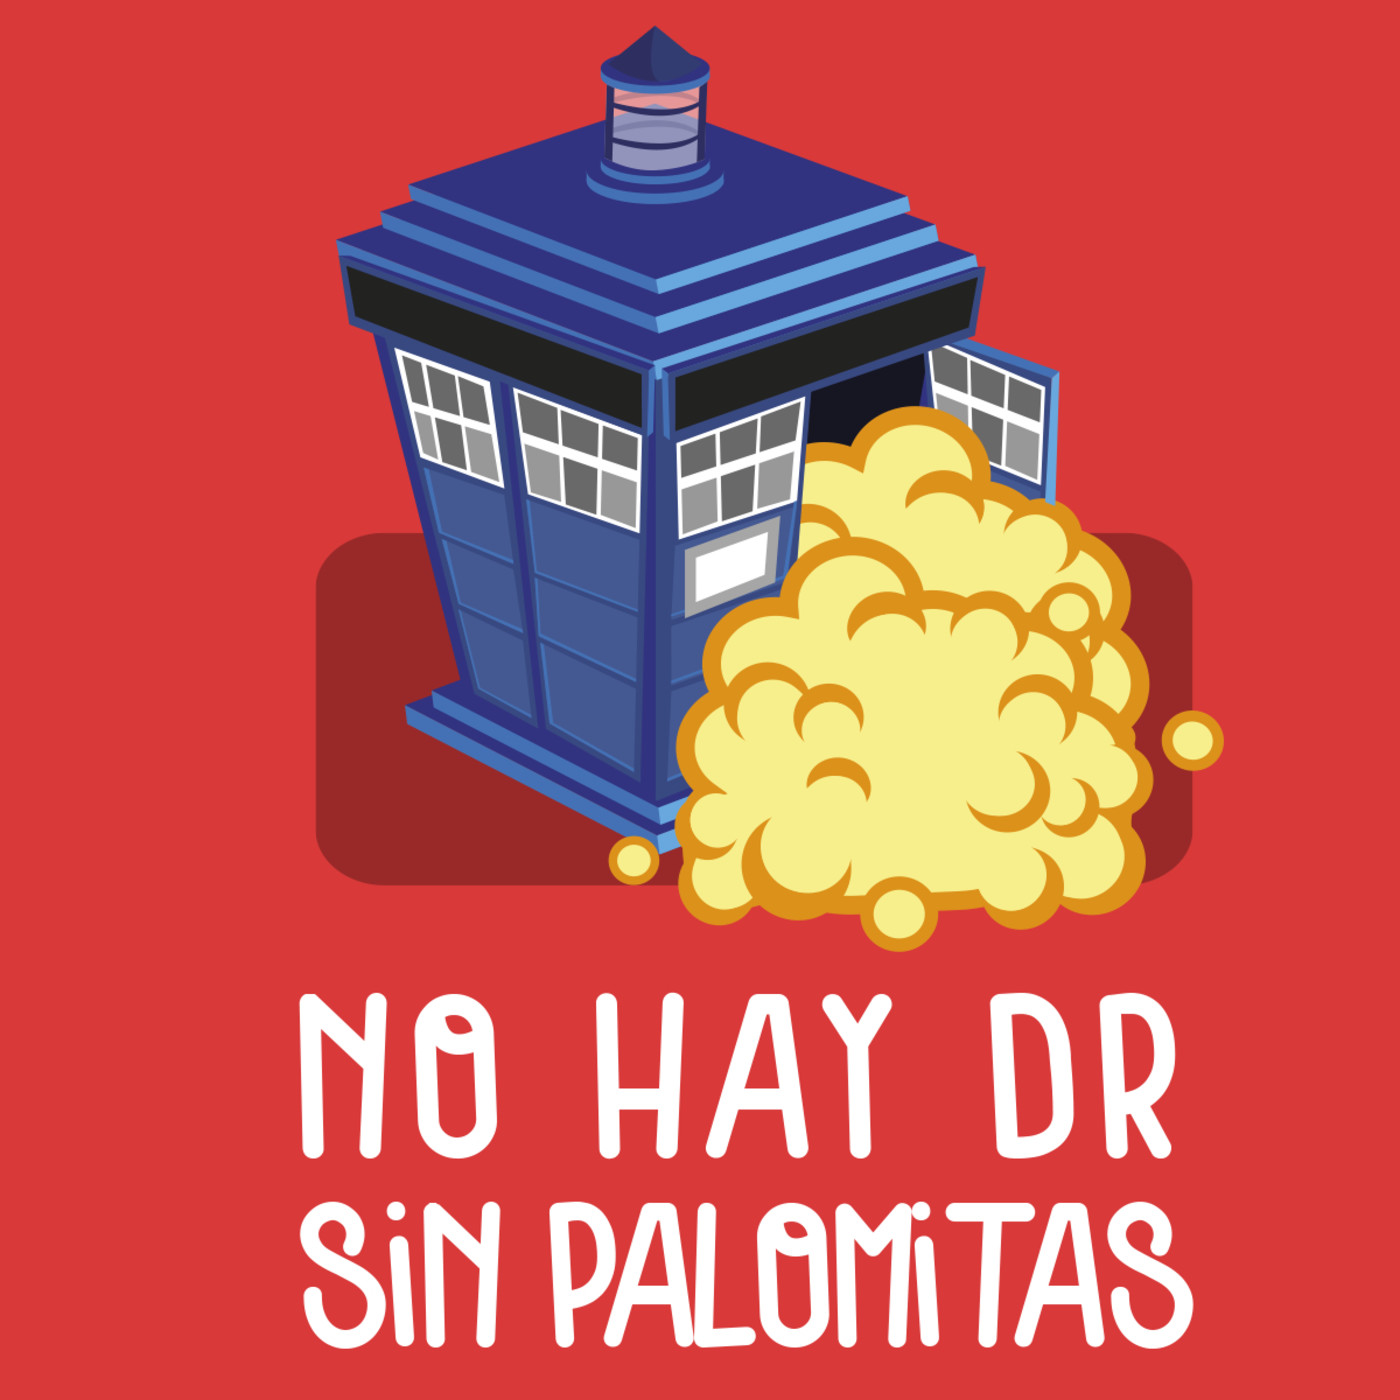 No Hay Doctor Sin Palomitas